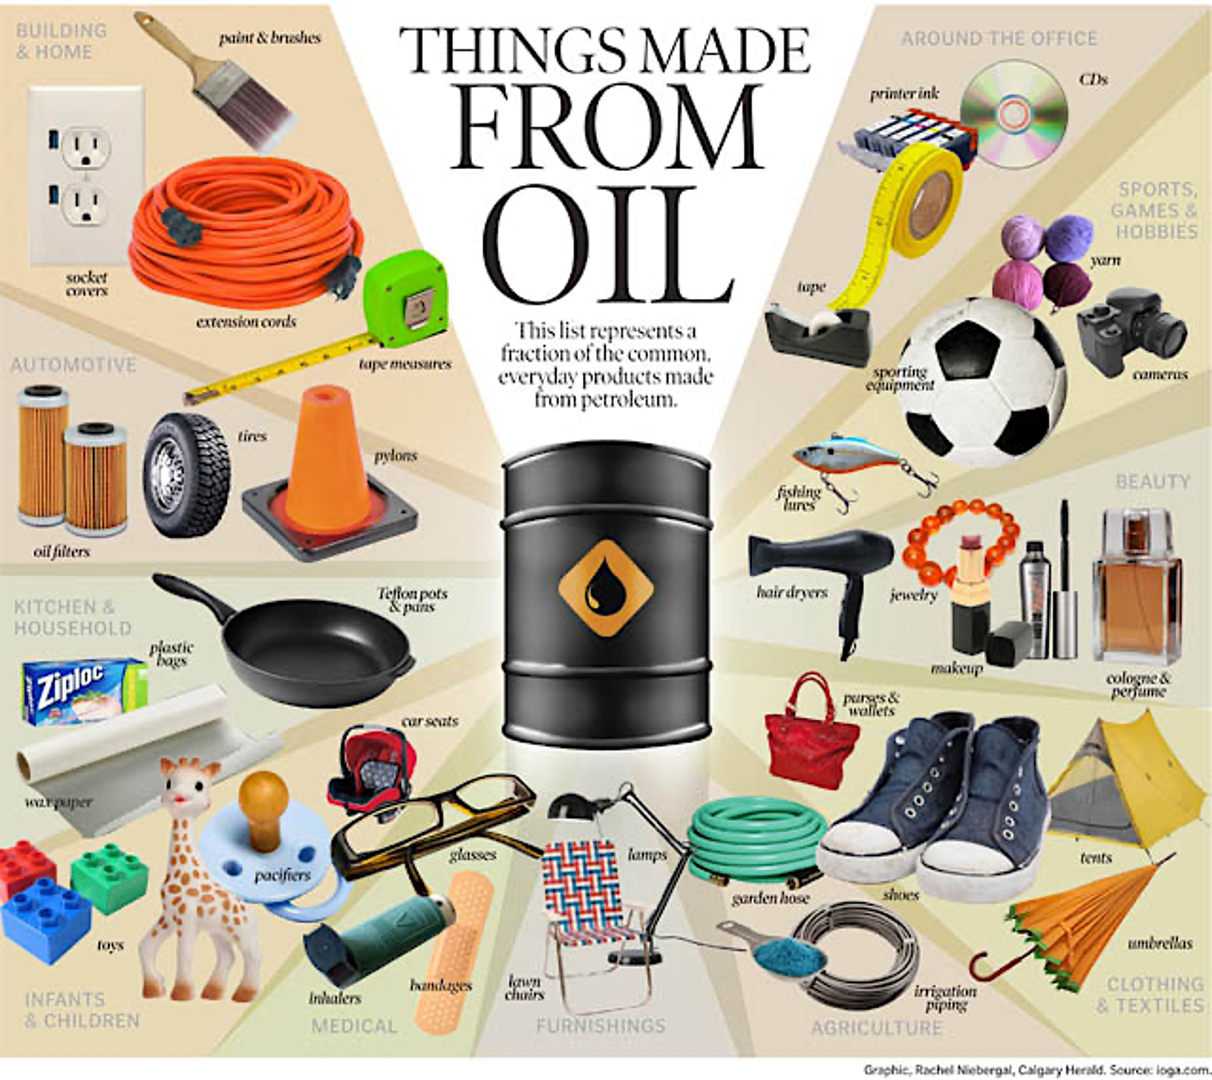 Four be the things. Что делают из нефти. Вещи сделанные из нефти. Товары, предметы из нефти. Изделия получаемые из нефти.